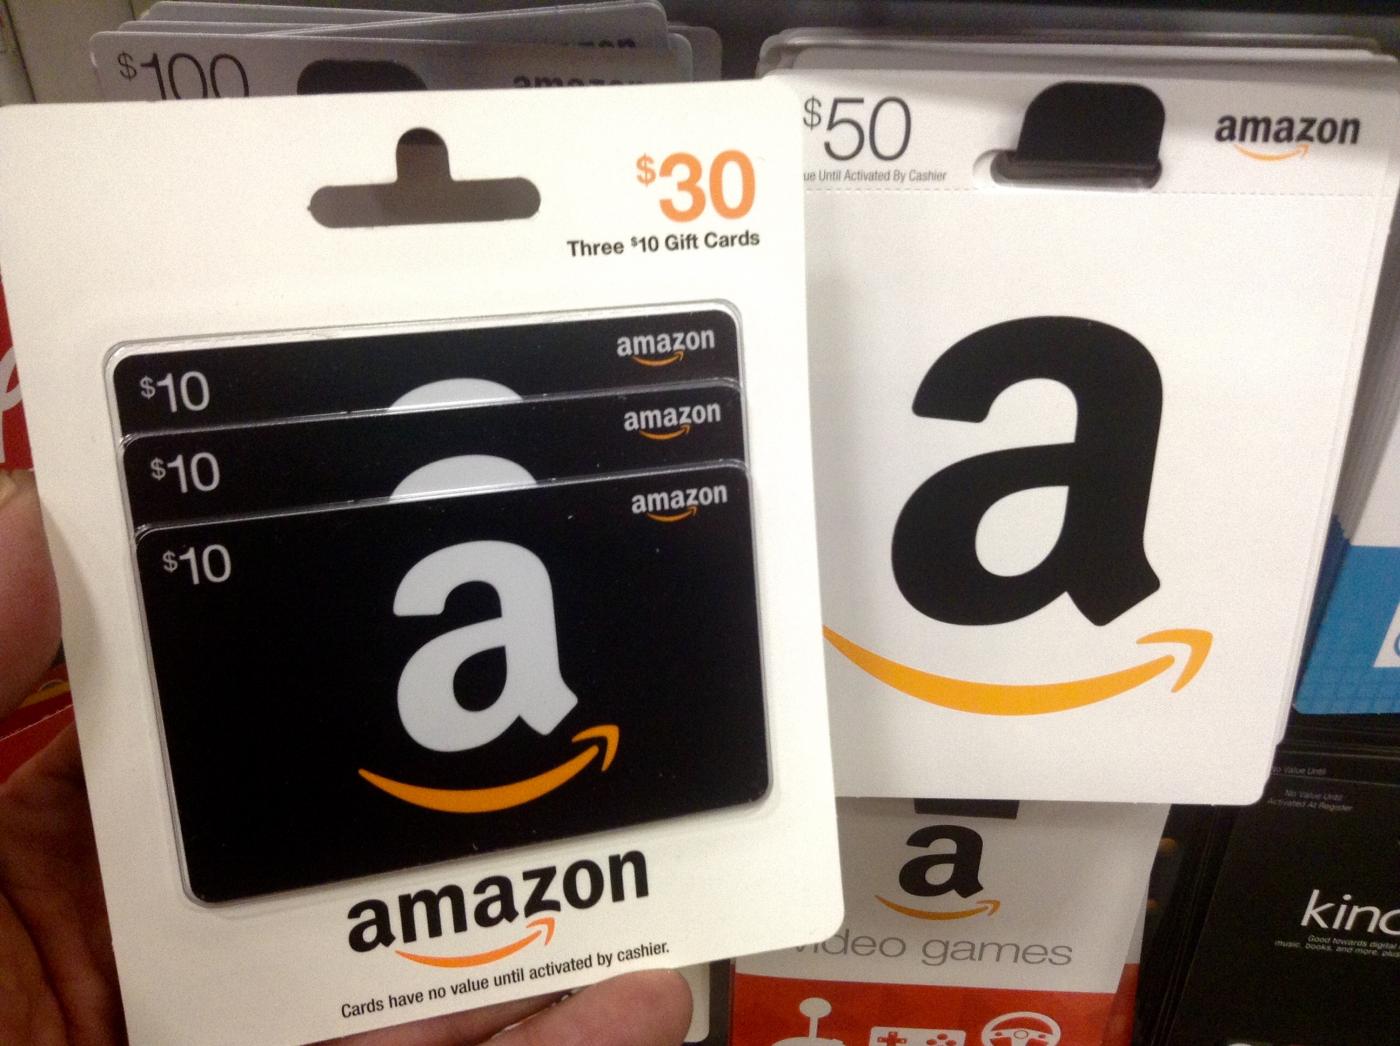 Preek tong genade Docenten klagen over cadeaubonnen UU: 'Ik schaam me als ik met een Amazon- bon aan kom' | DUB